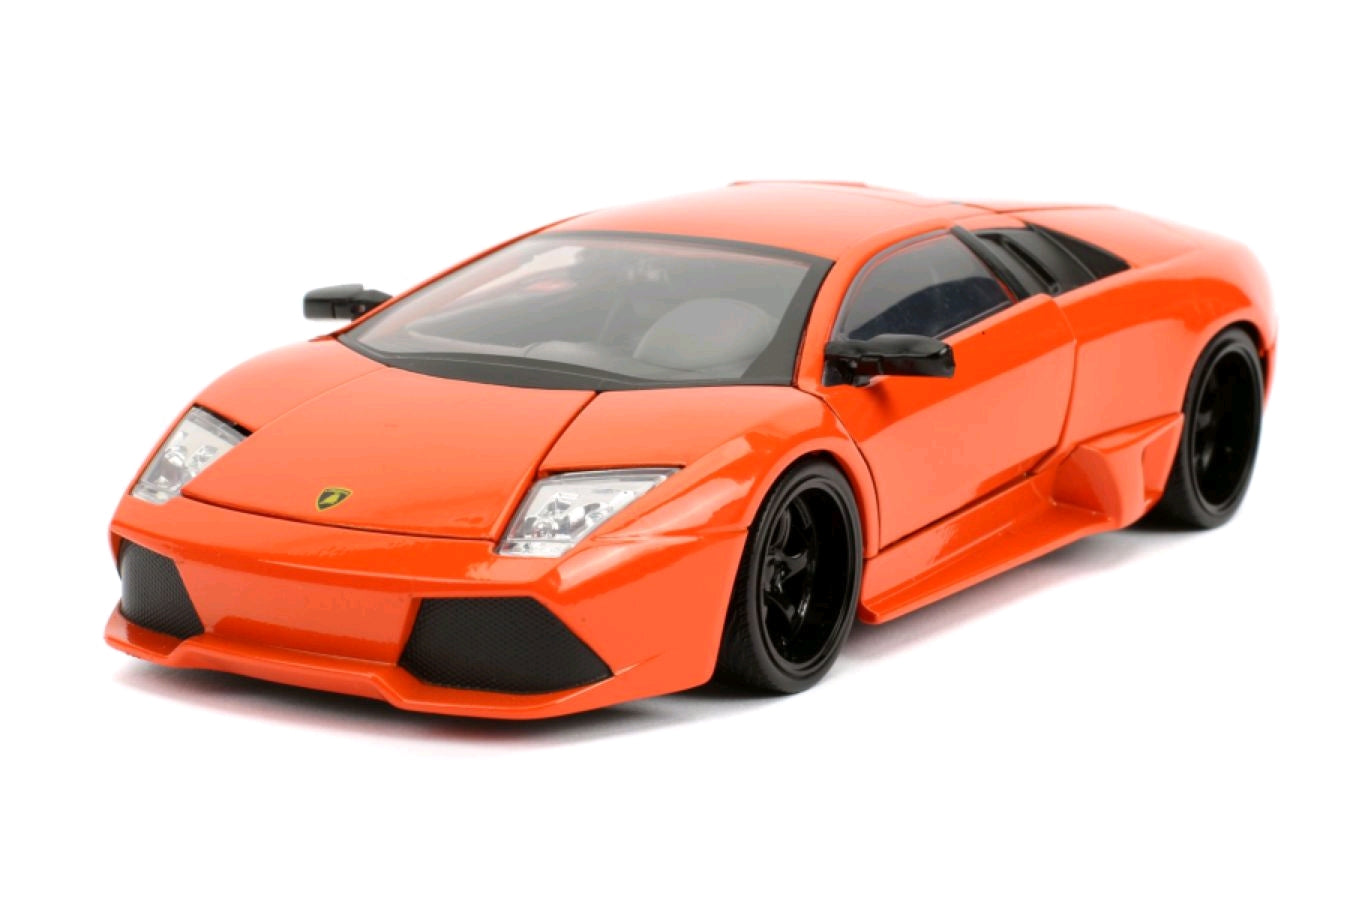 Fast and Furious - Lamborghini Murcielago P640 1:24 Scale Hollywood Ride